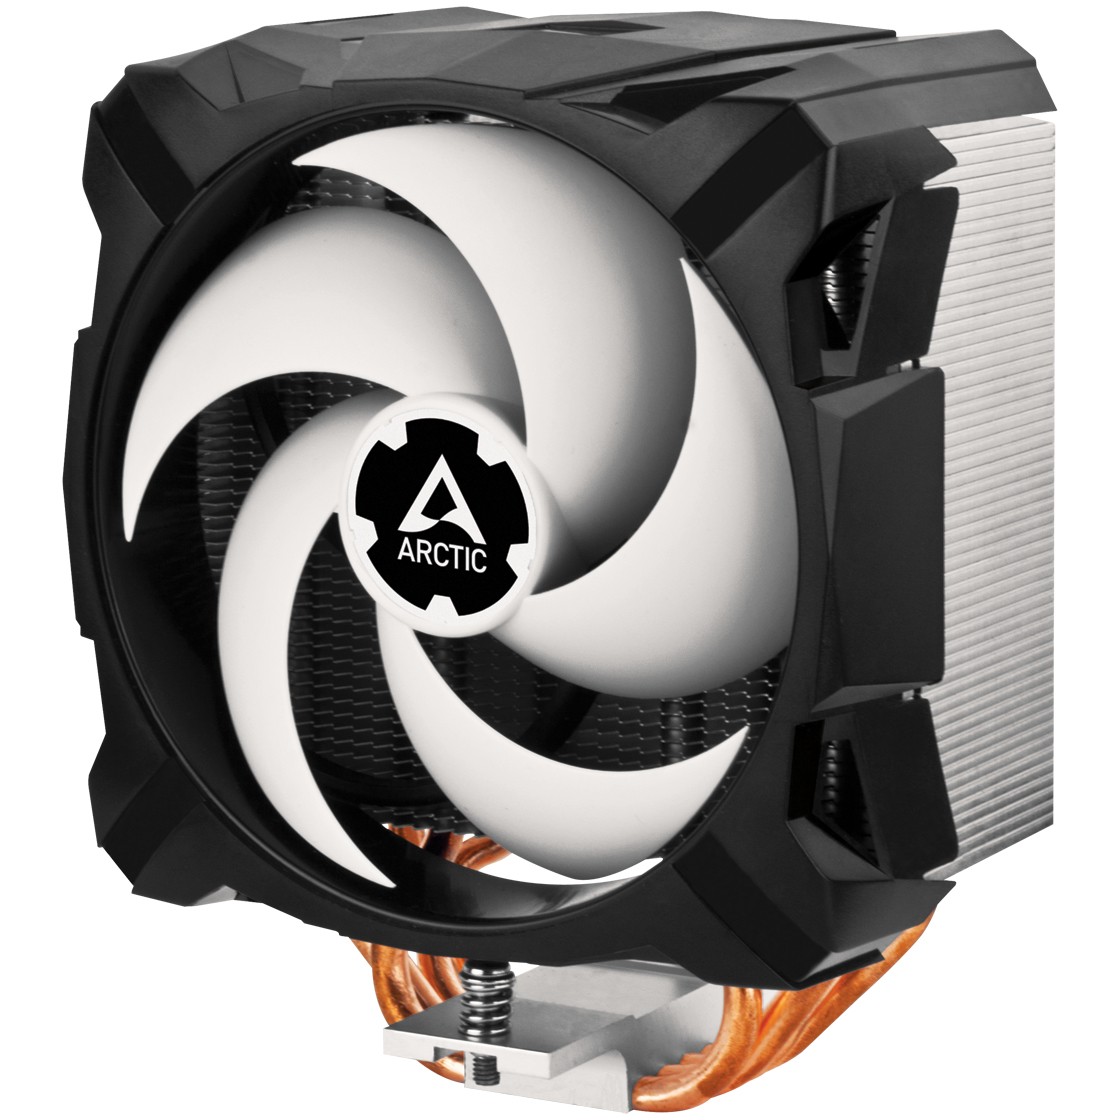 ARCTIC Freezer i35 - Tower CPU Kühler für Intel